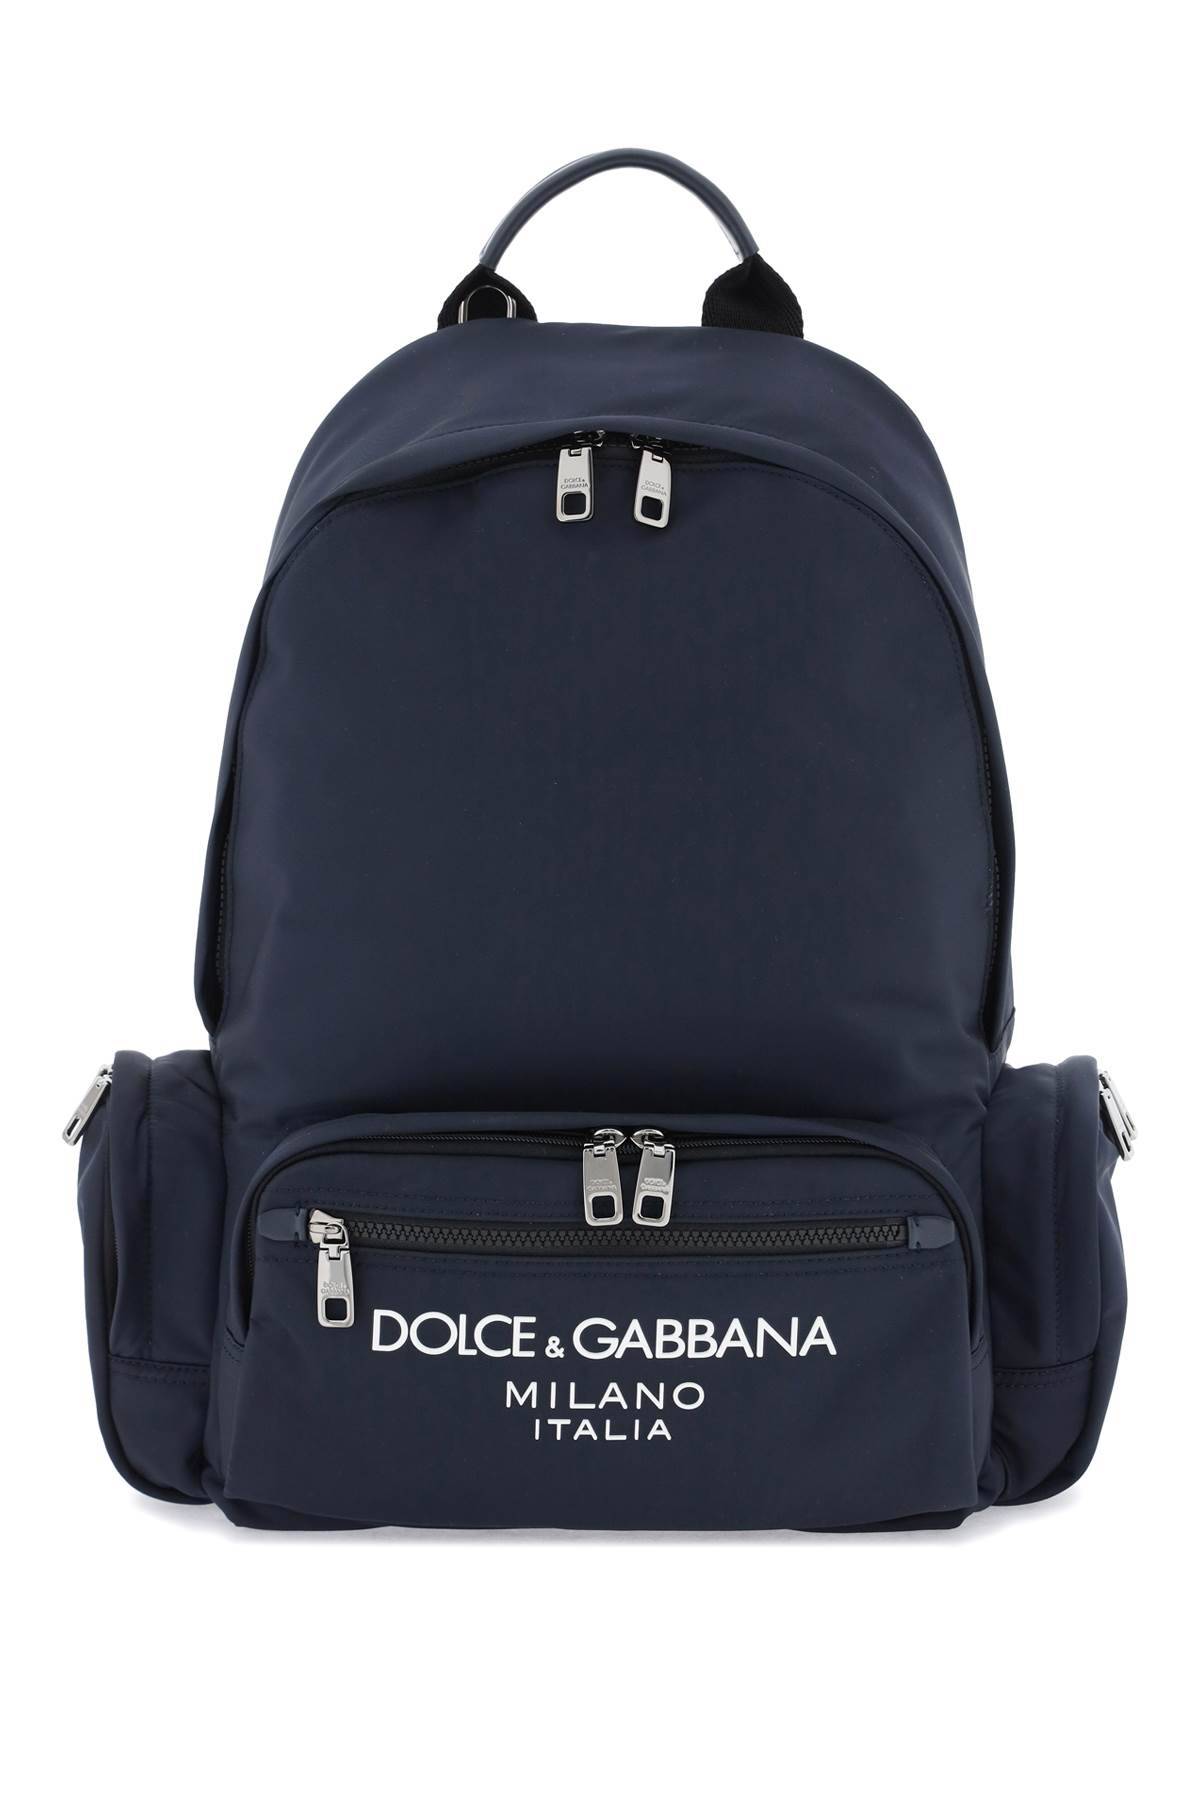 Dolce & Gabbana DOLCE & GABBANA nylon backpack with logo